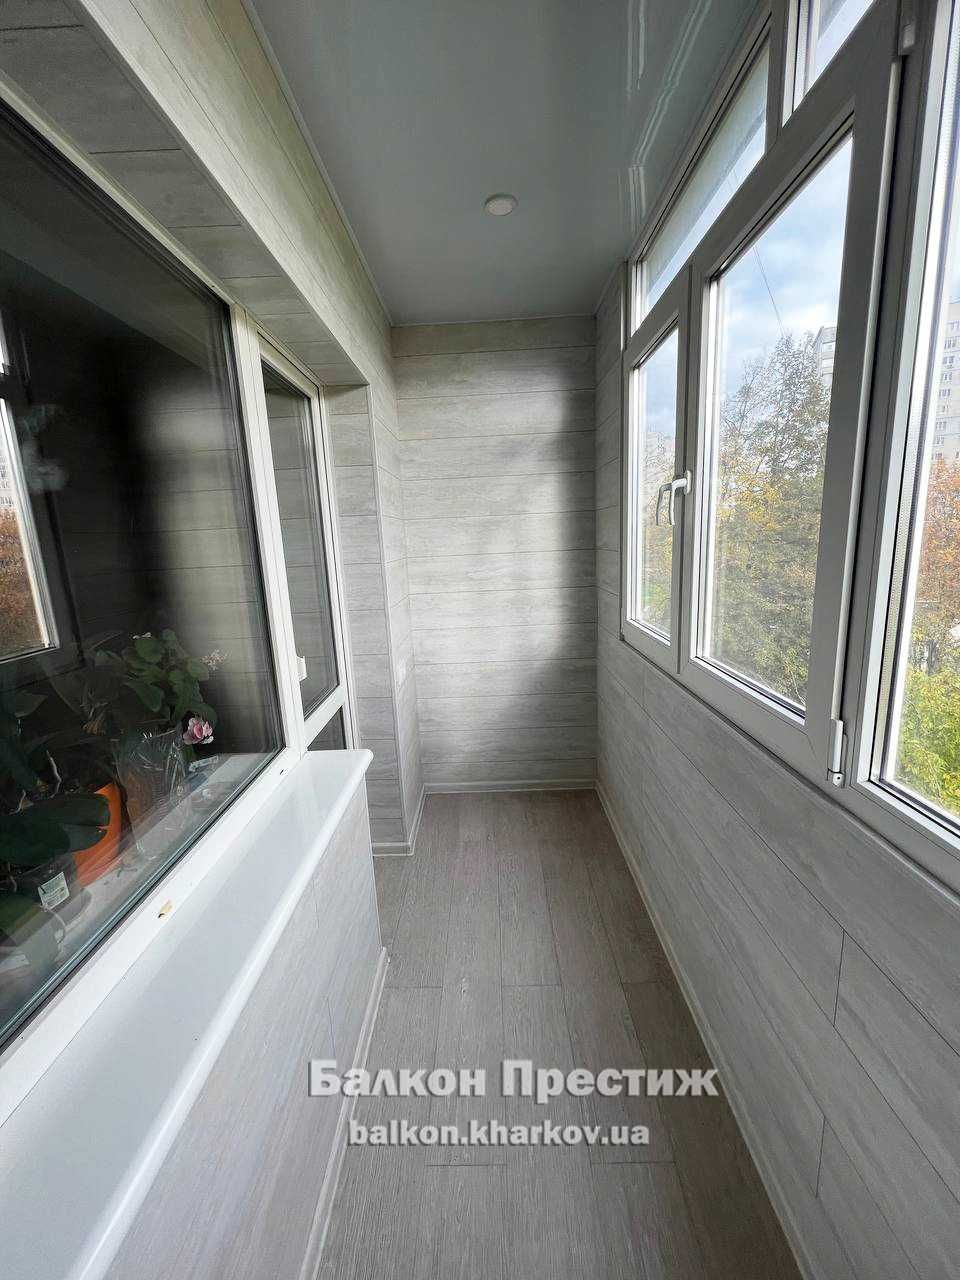 ОБШИВКА, остекление, ремонт балконов Харьков